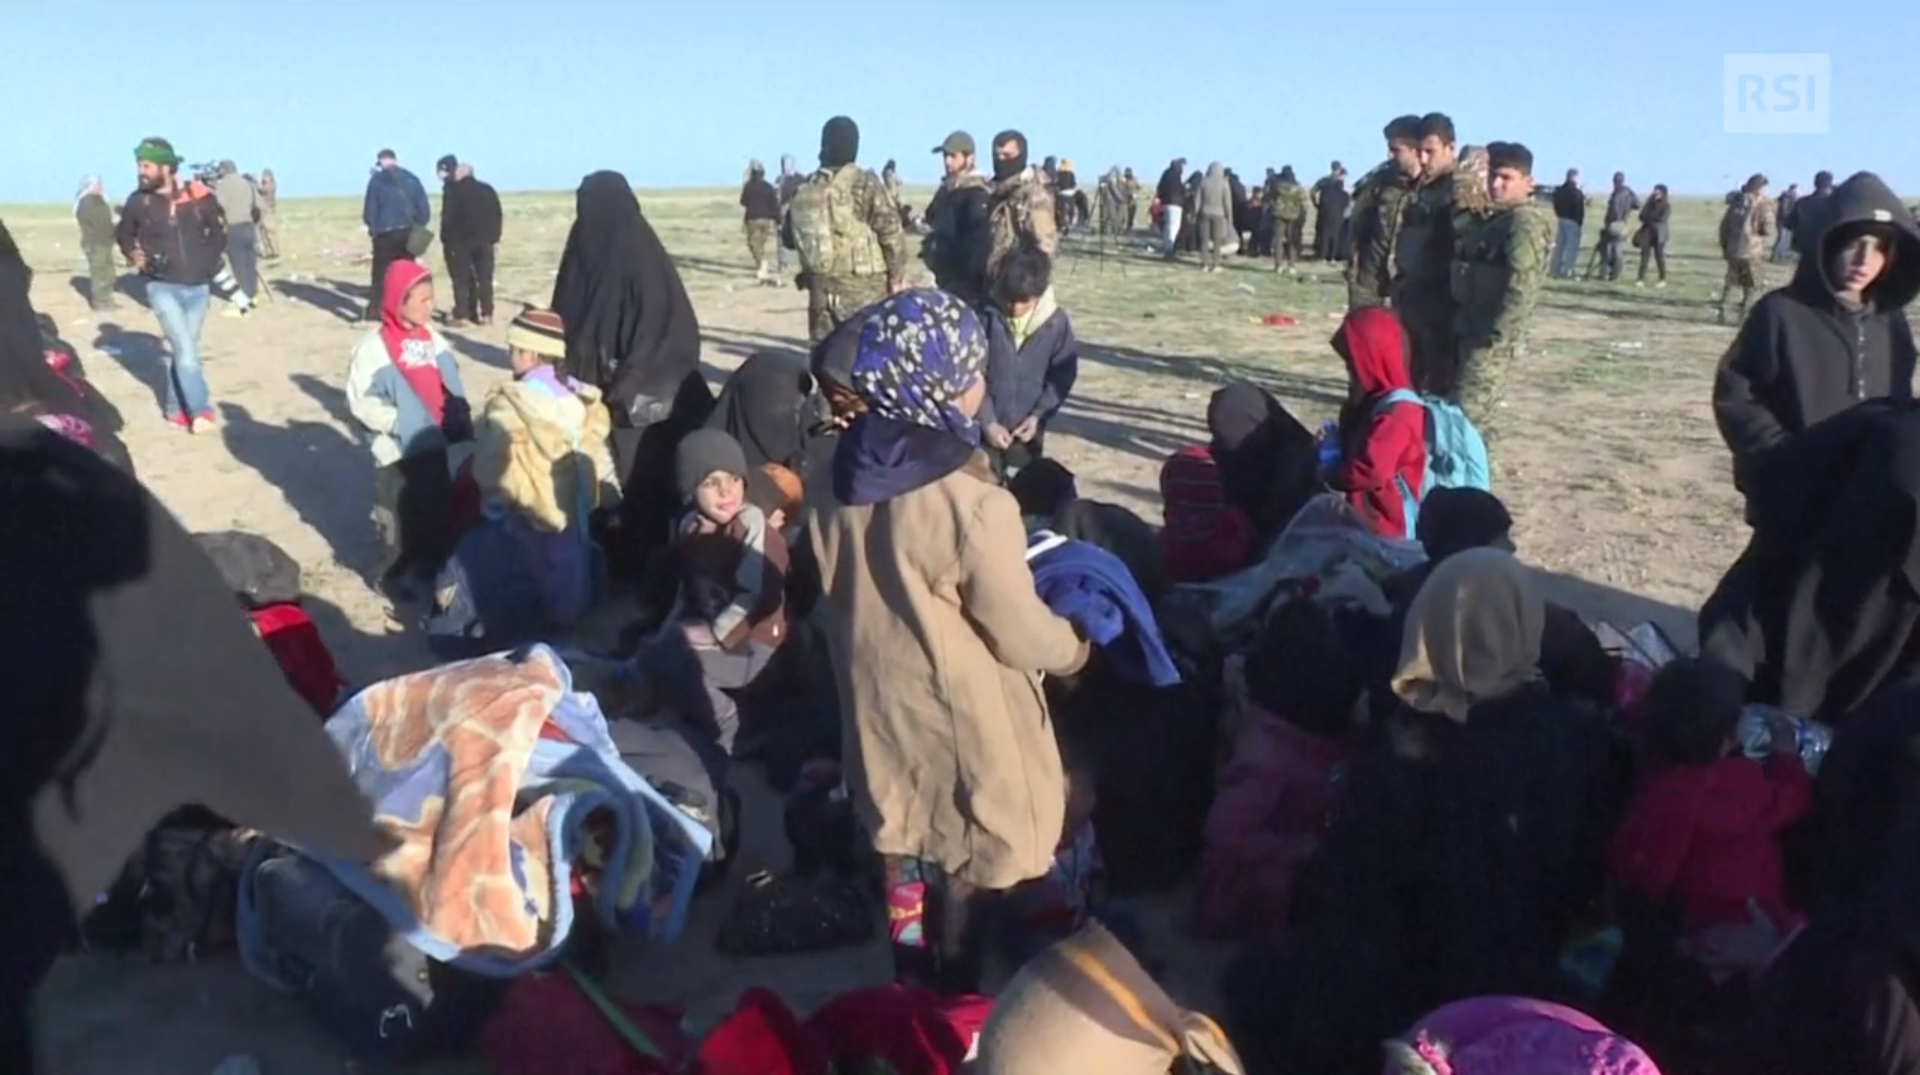 Vista di persone sparpagliate in un campo profughi; in primo piano famiglie con piccoli; in lontananza militari